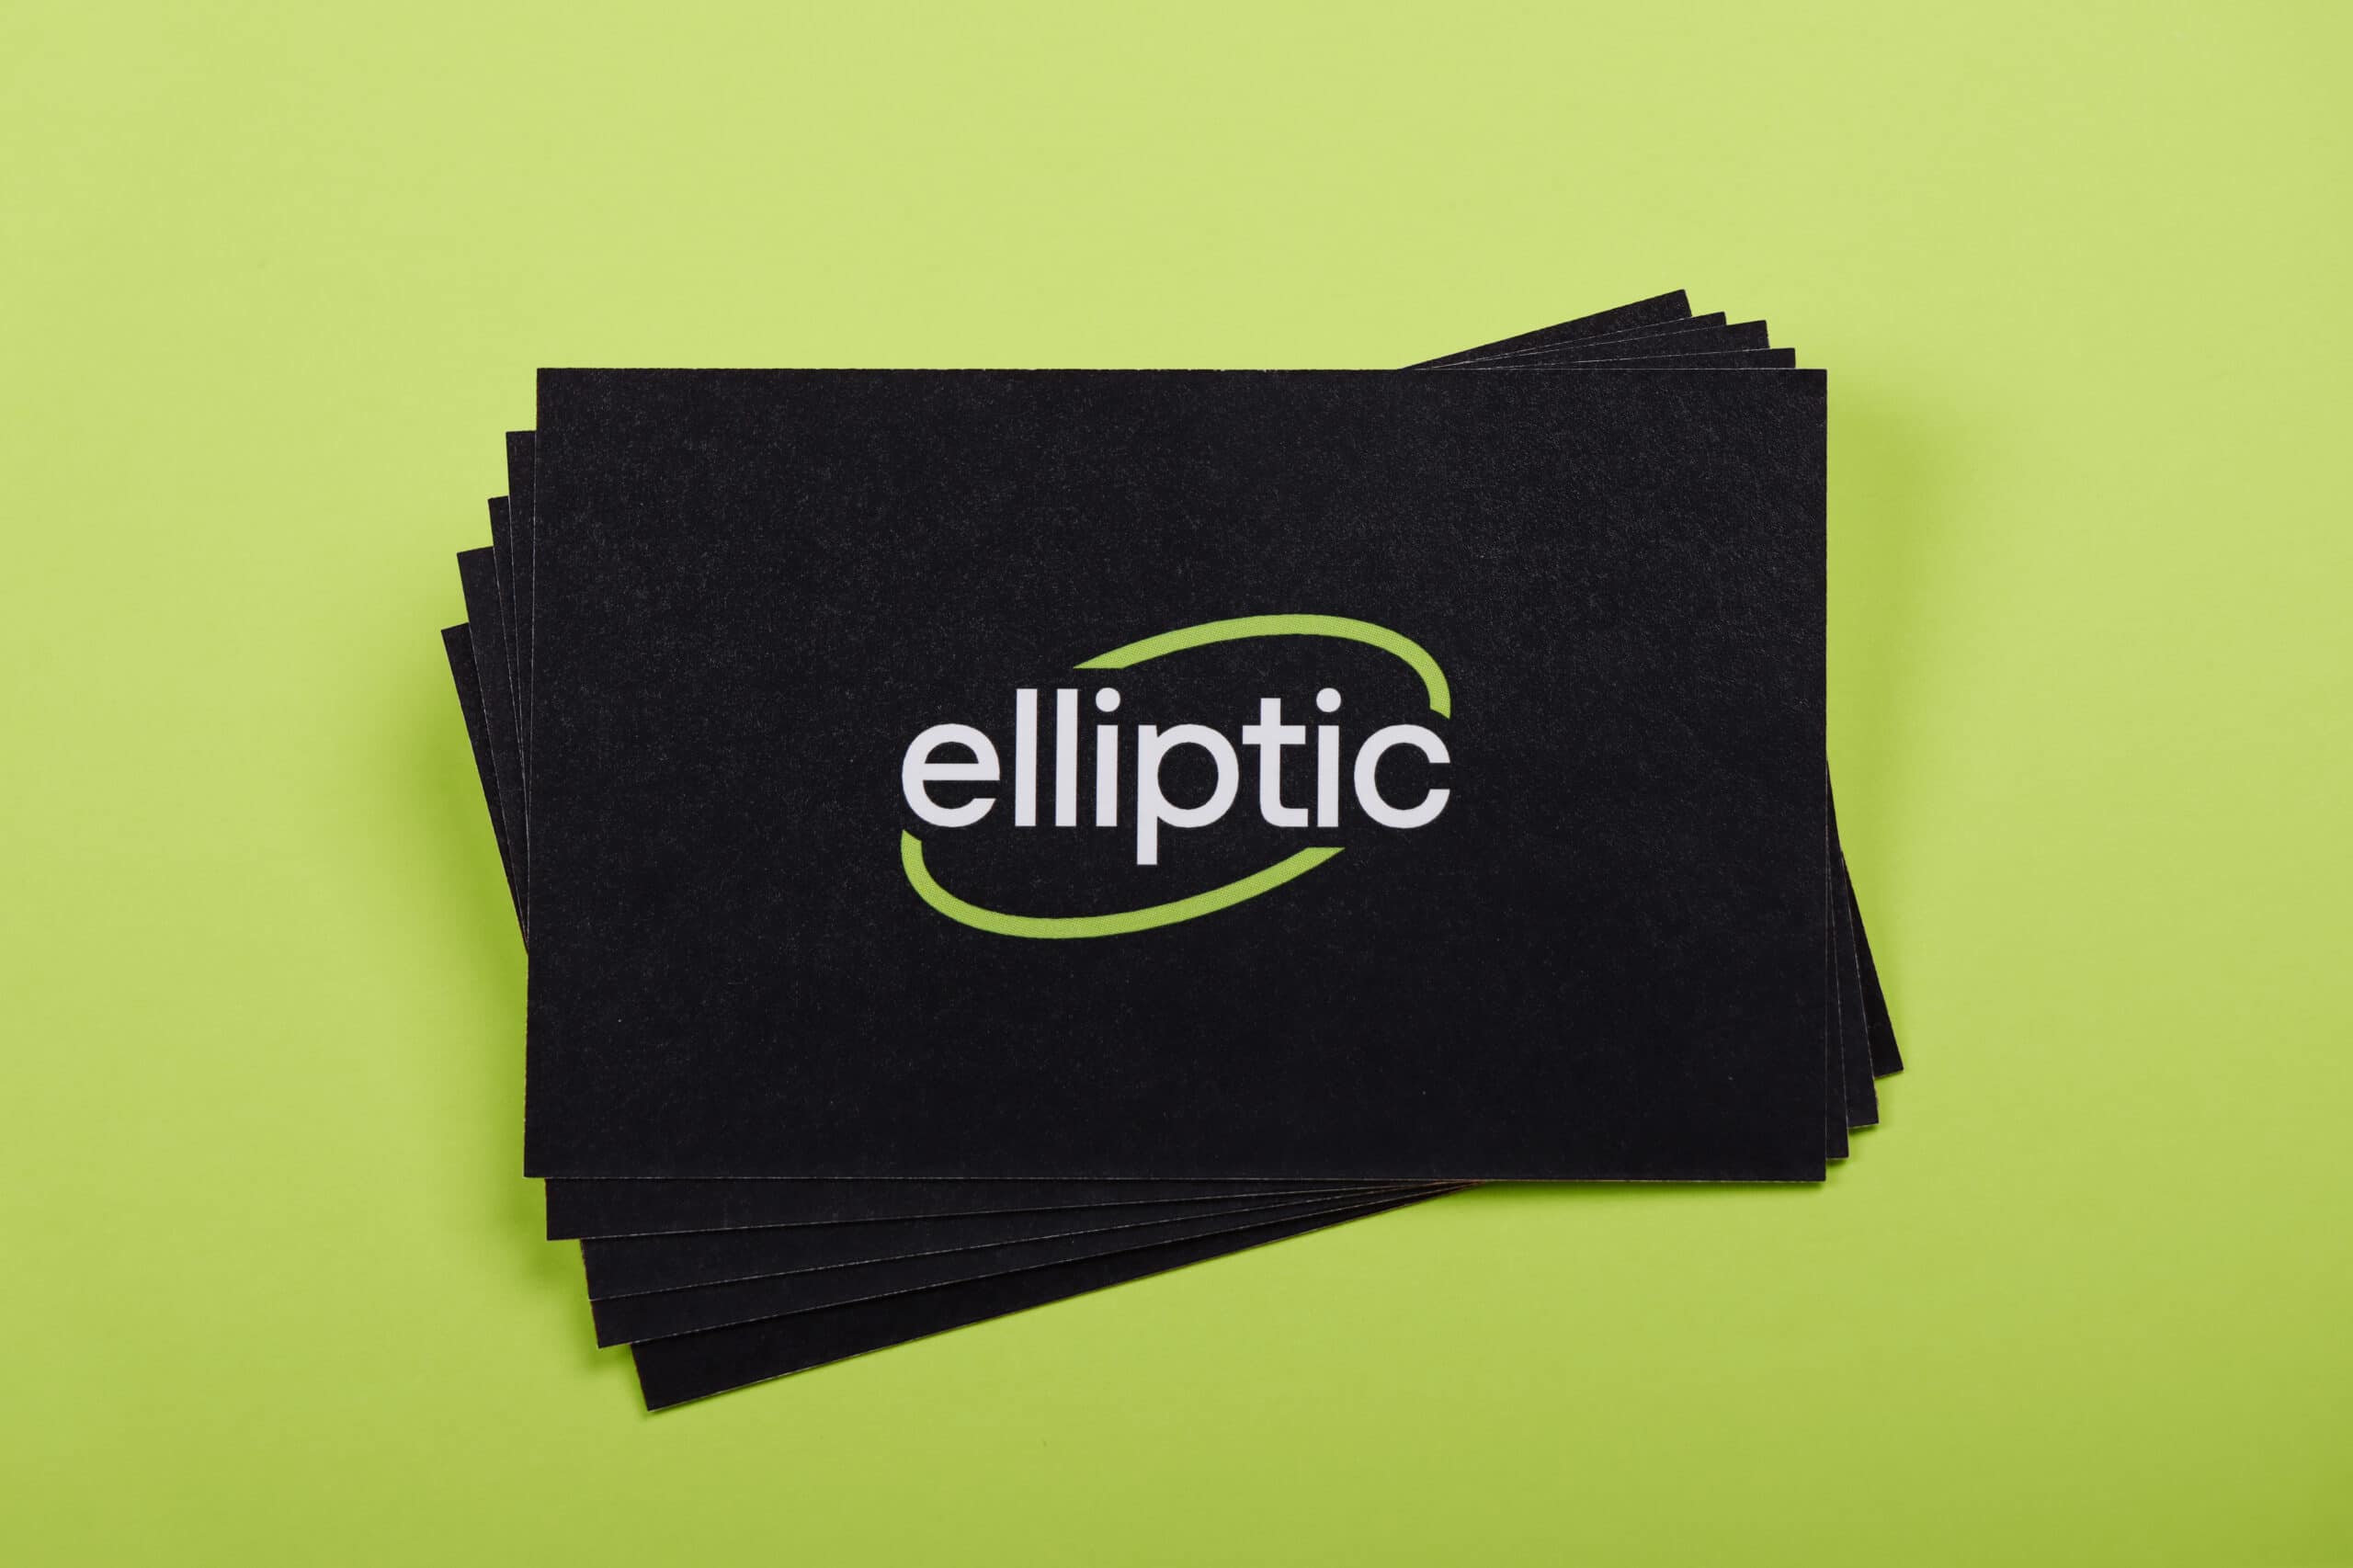 Pile de cartes de visites Elliptic, avec le logo sur une face complétement noire.